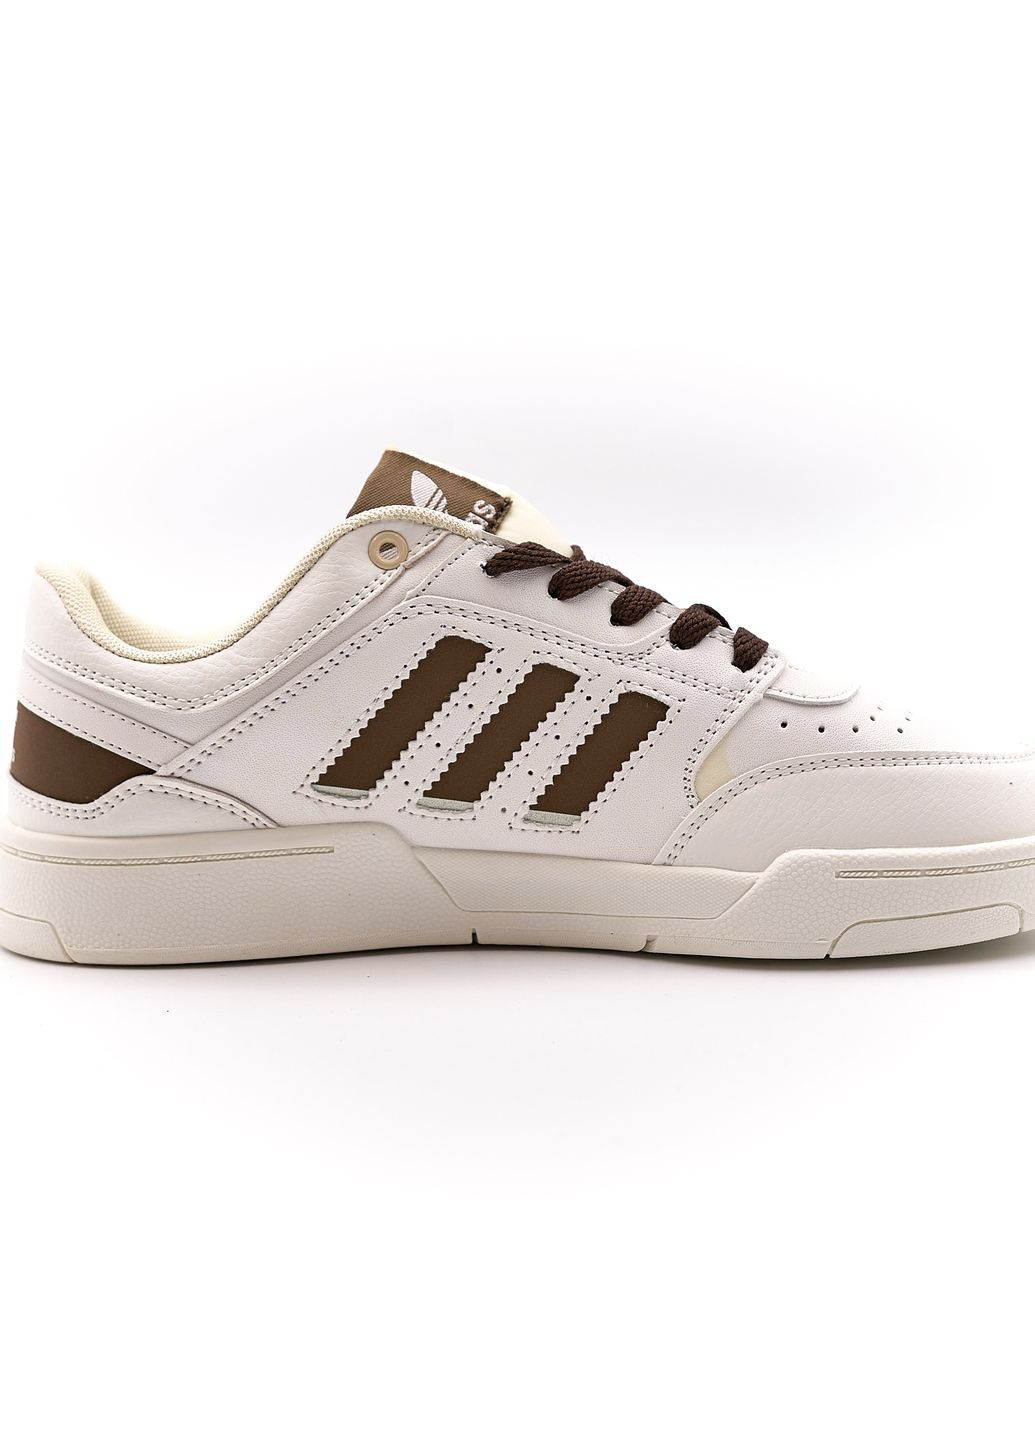 Белые демисезонные кроссовки мужские low white brown, вьетнам adidas Drop Step